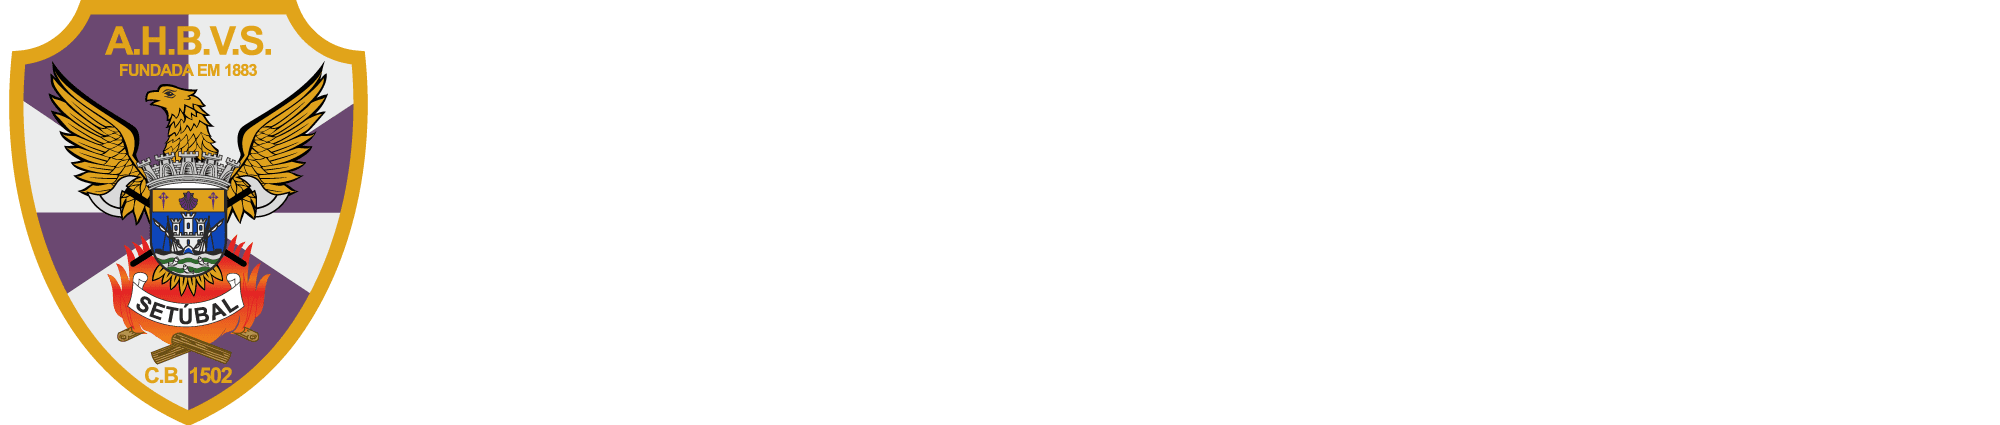 Associação Humanitária dos Bombeiros Voluntários de Setúbal